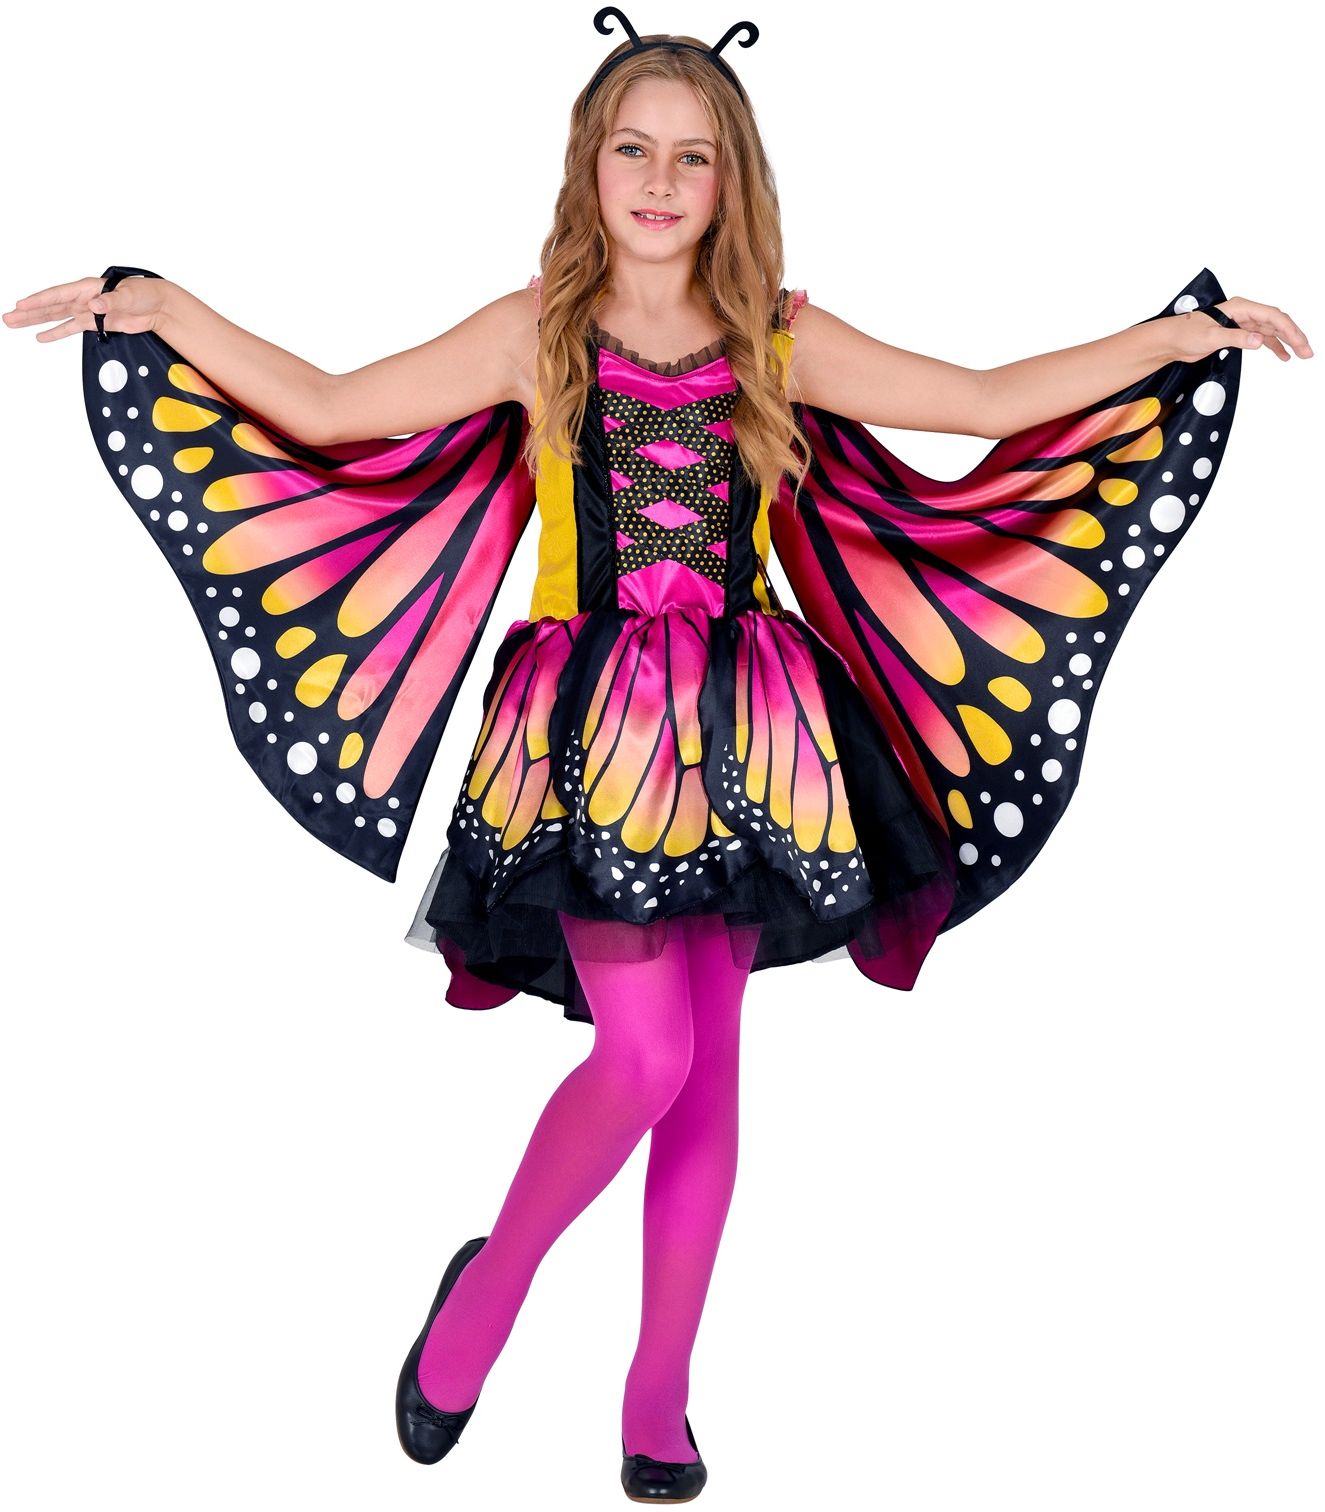 Gekleurde vlinder outfit met vleugels meisjes